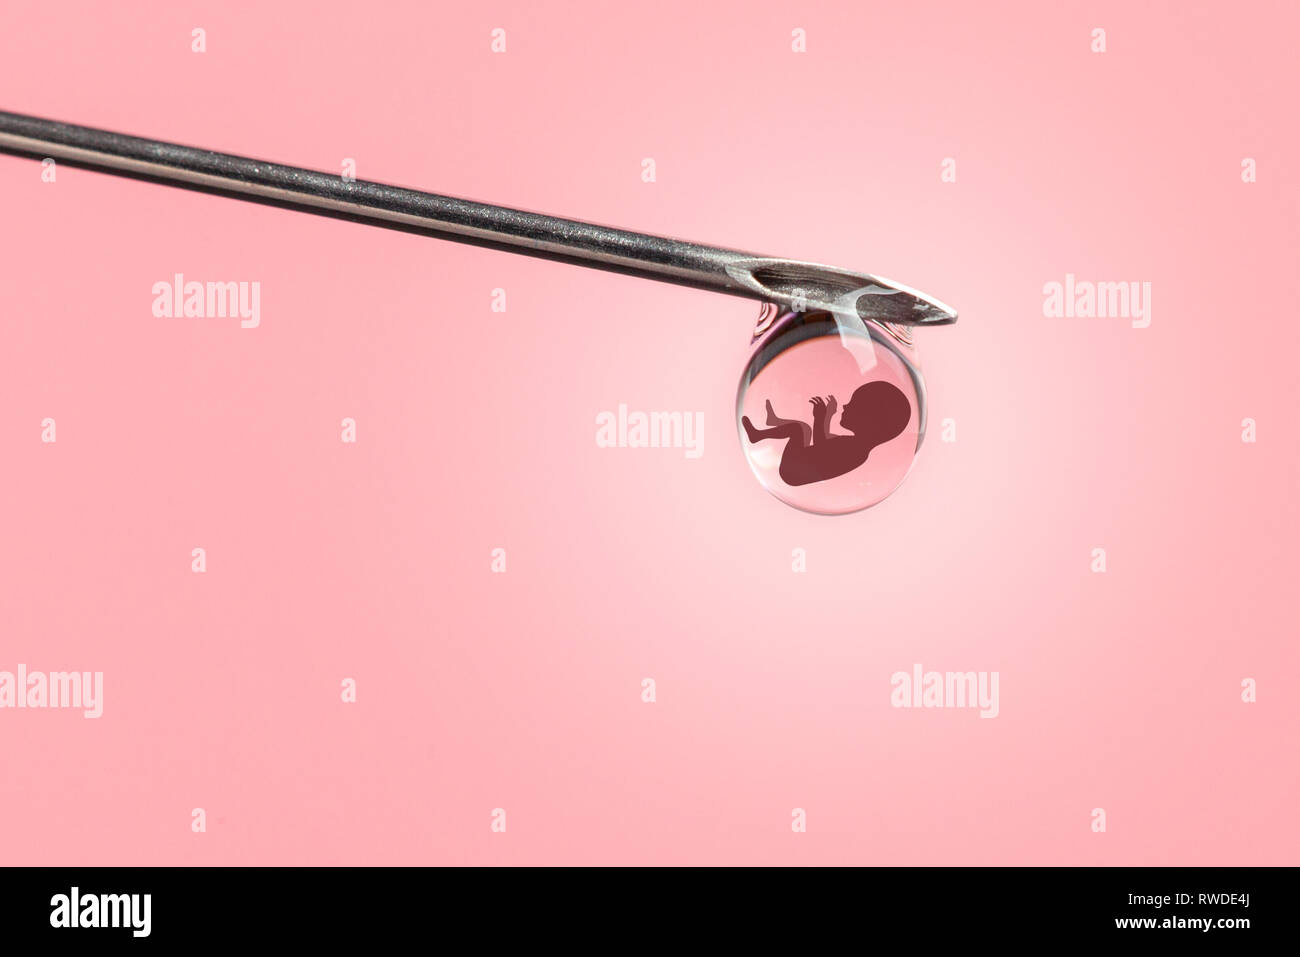 Künstliche Befruchtung. Retortenbaby, IVF. An der Spitze der Nadel der Spritze mit der Silhouette von baby Embryo Stockfoto